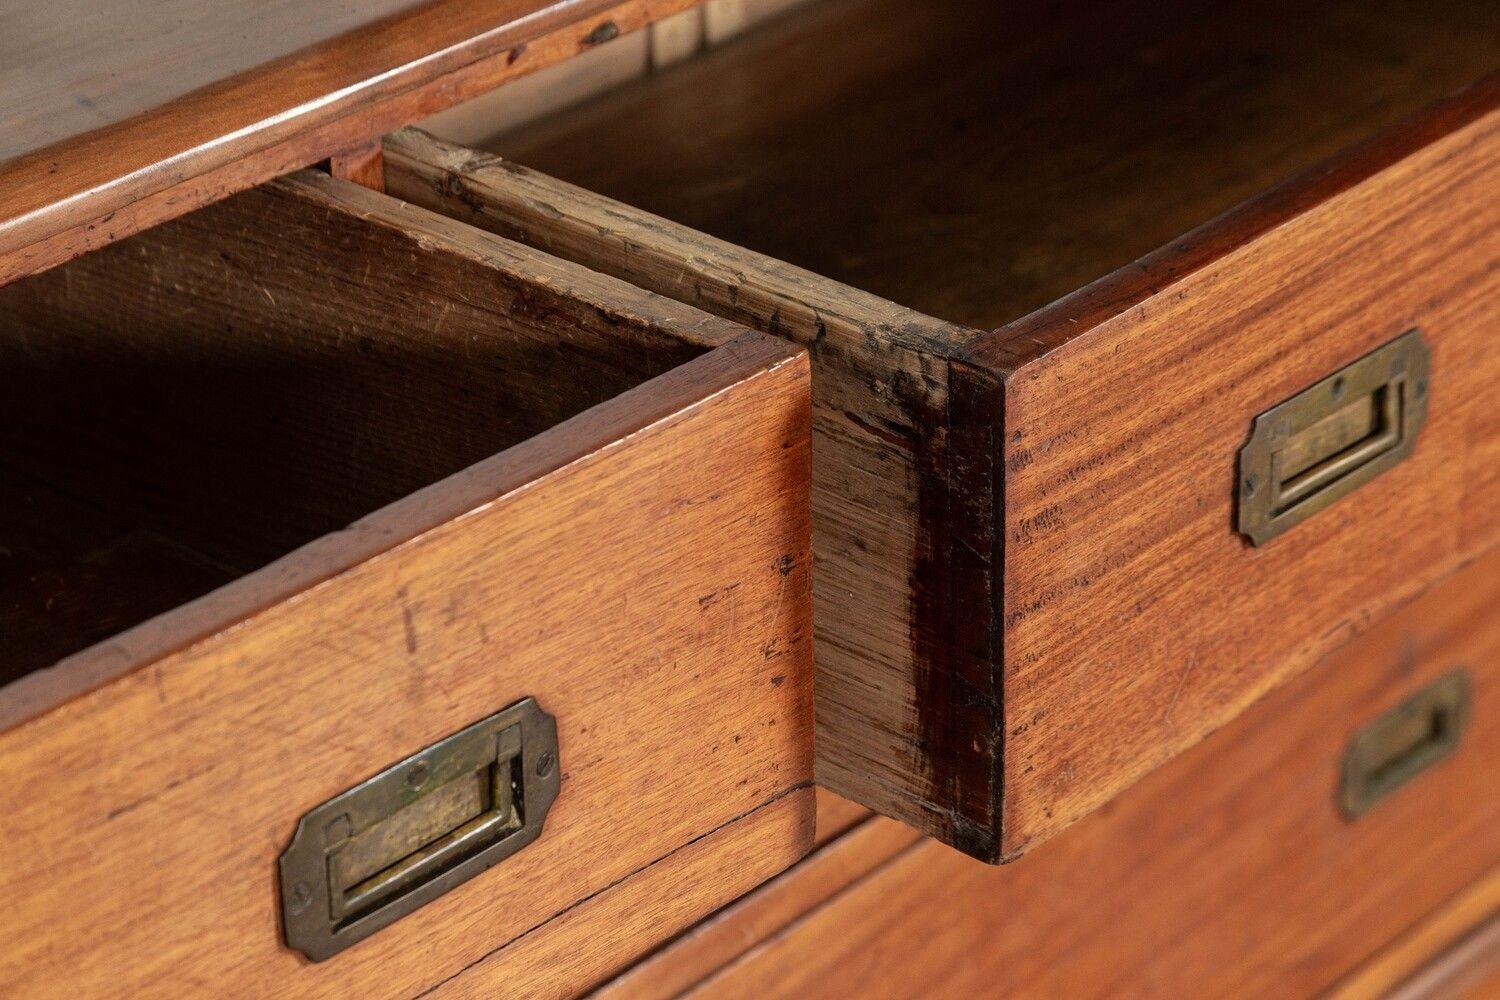 vers 1890
Grande base de commode à 6 tiroirs en chêne anglais du XIXe siècle
sku 1736
W169 x D57 x H88
Poids 102 Kg